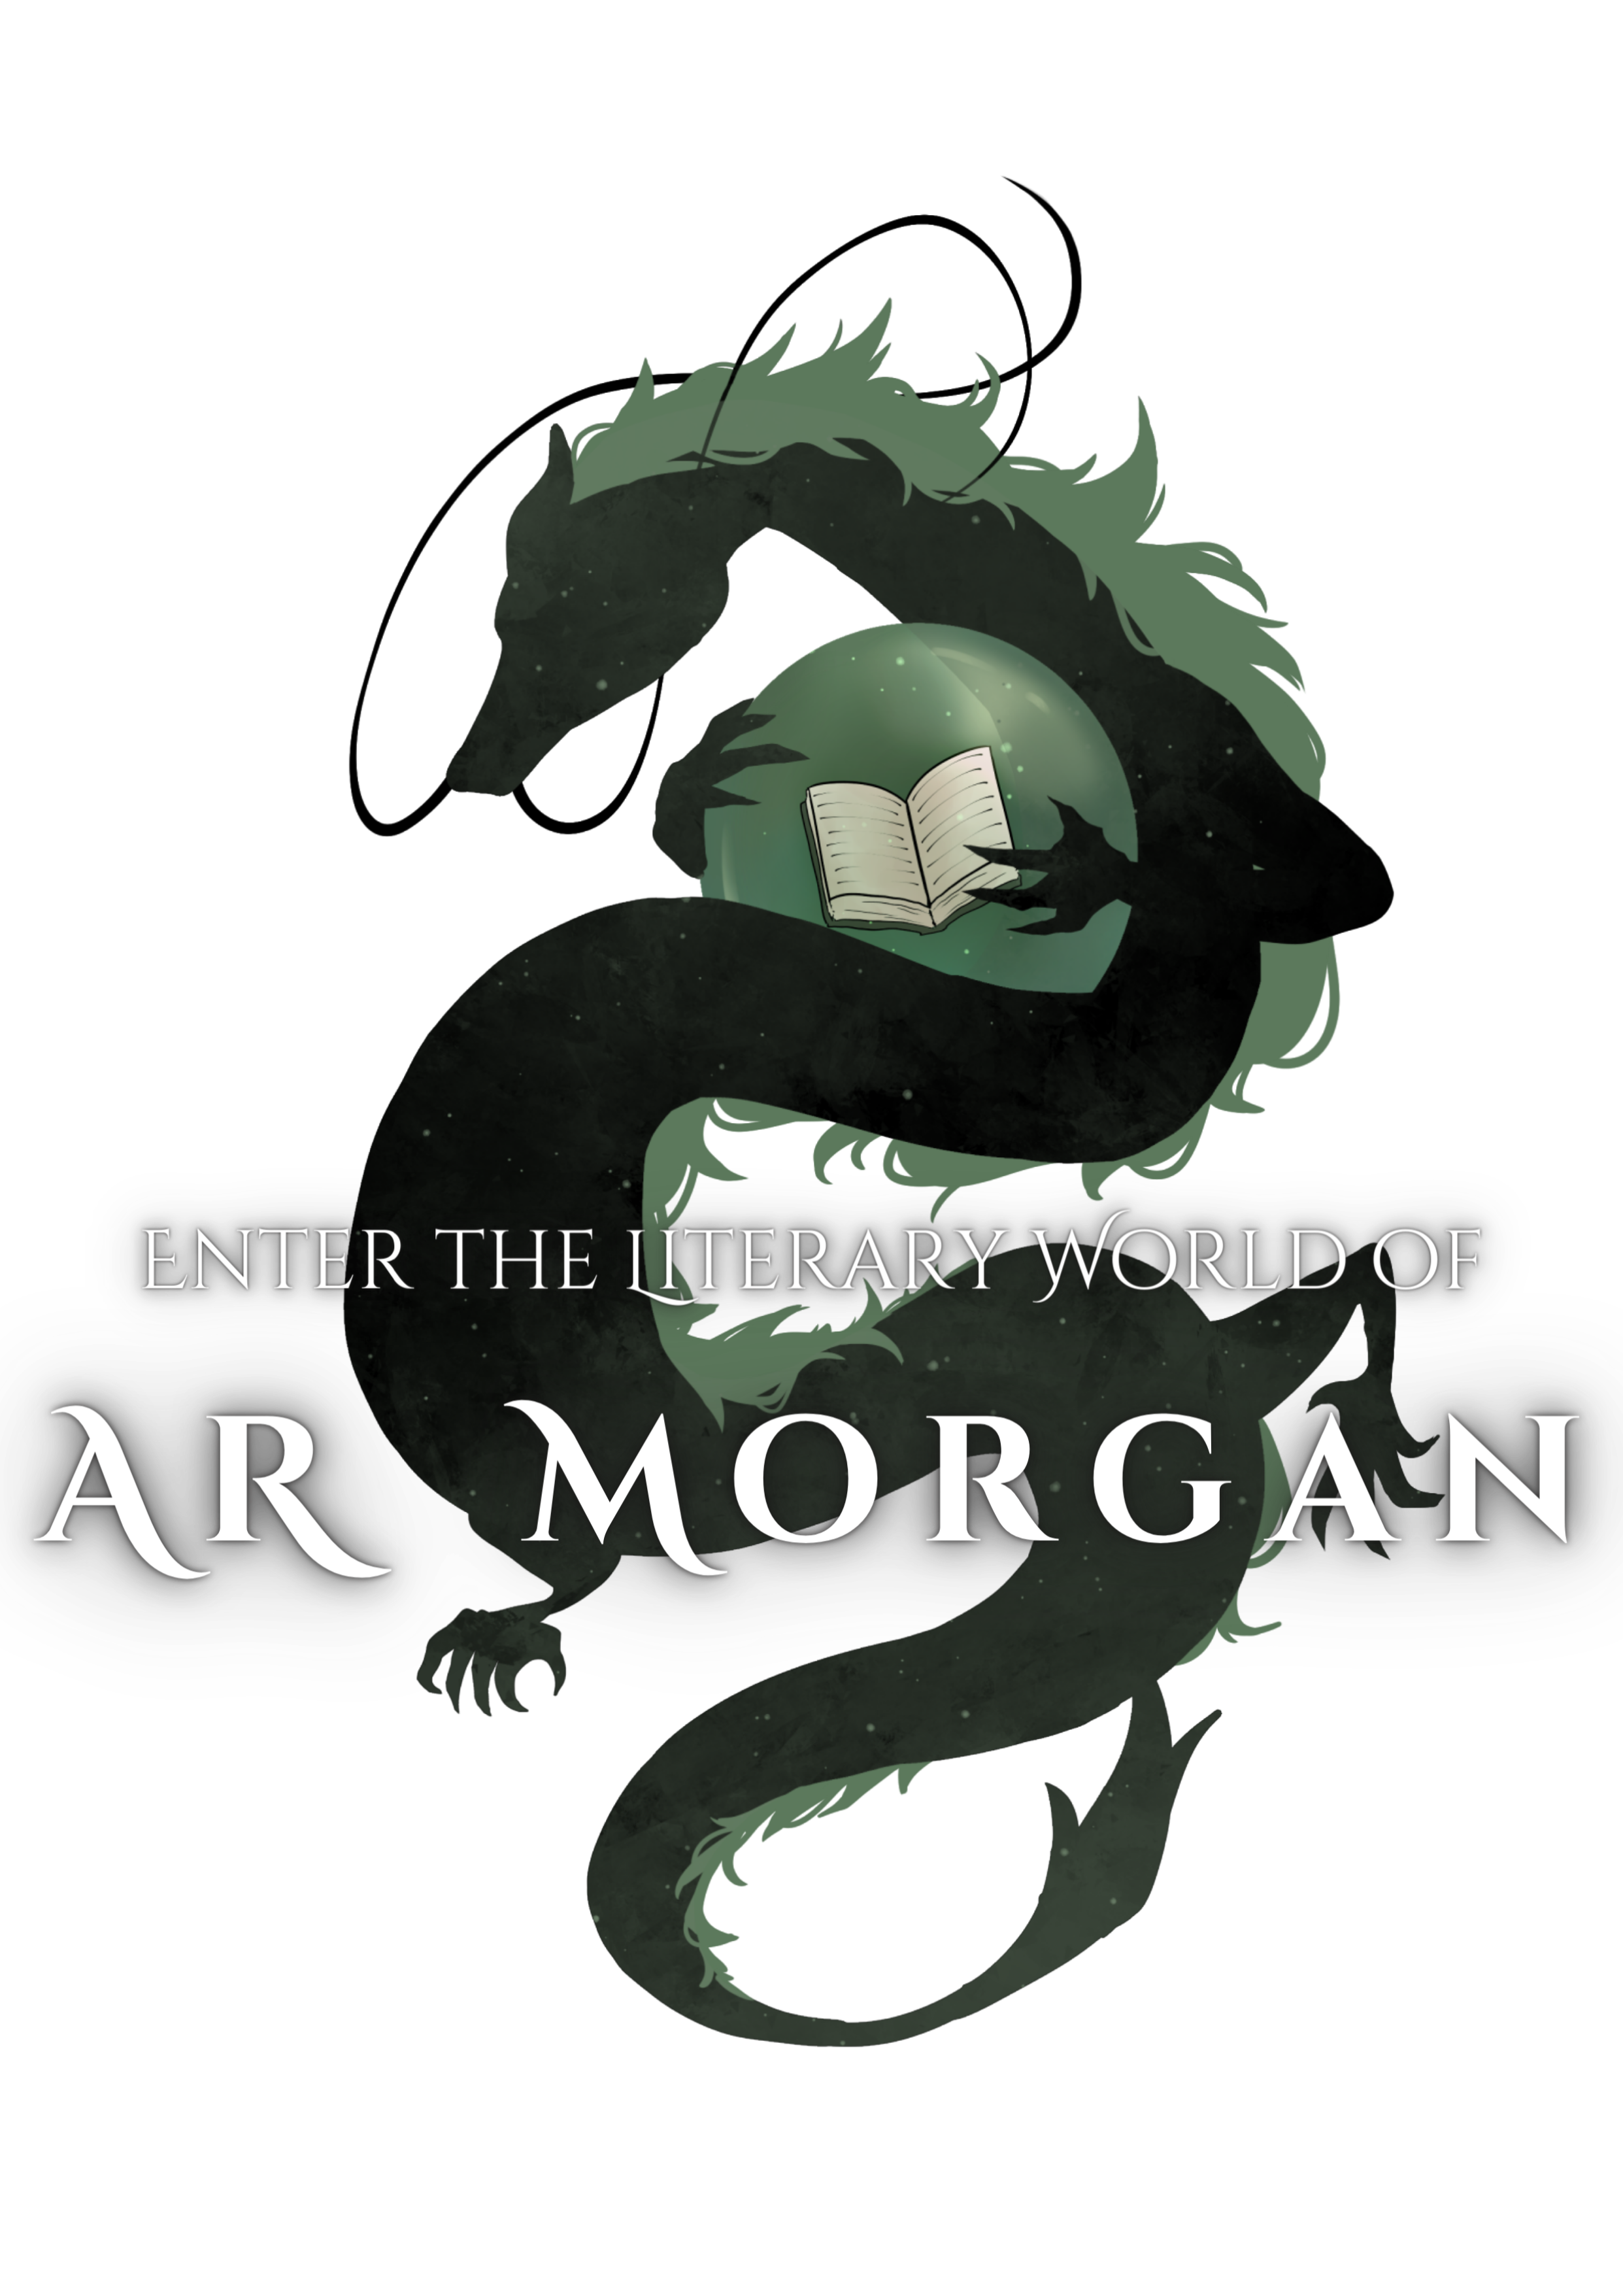 A. R. Morgan Books & Narration